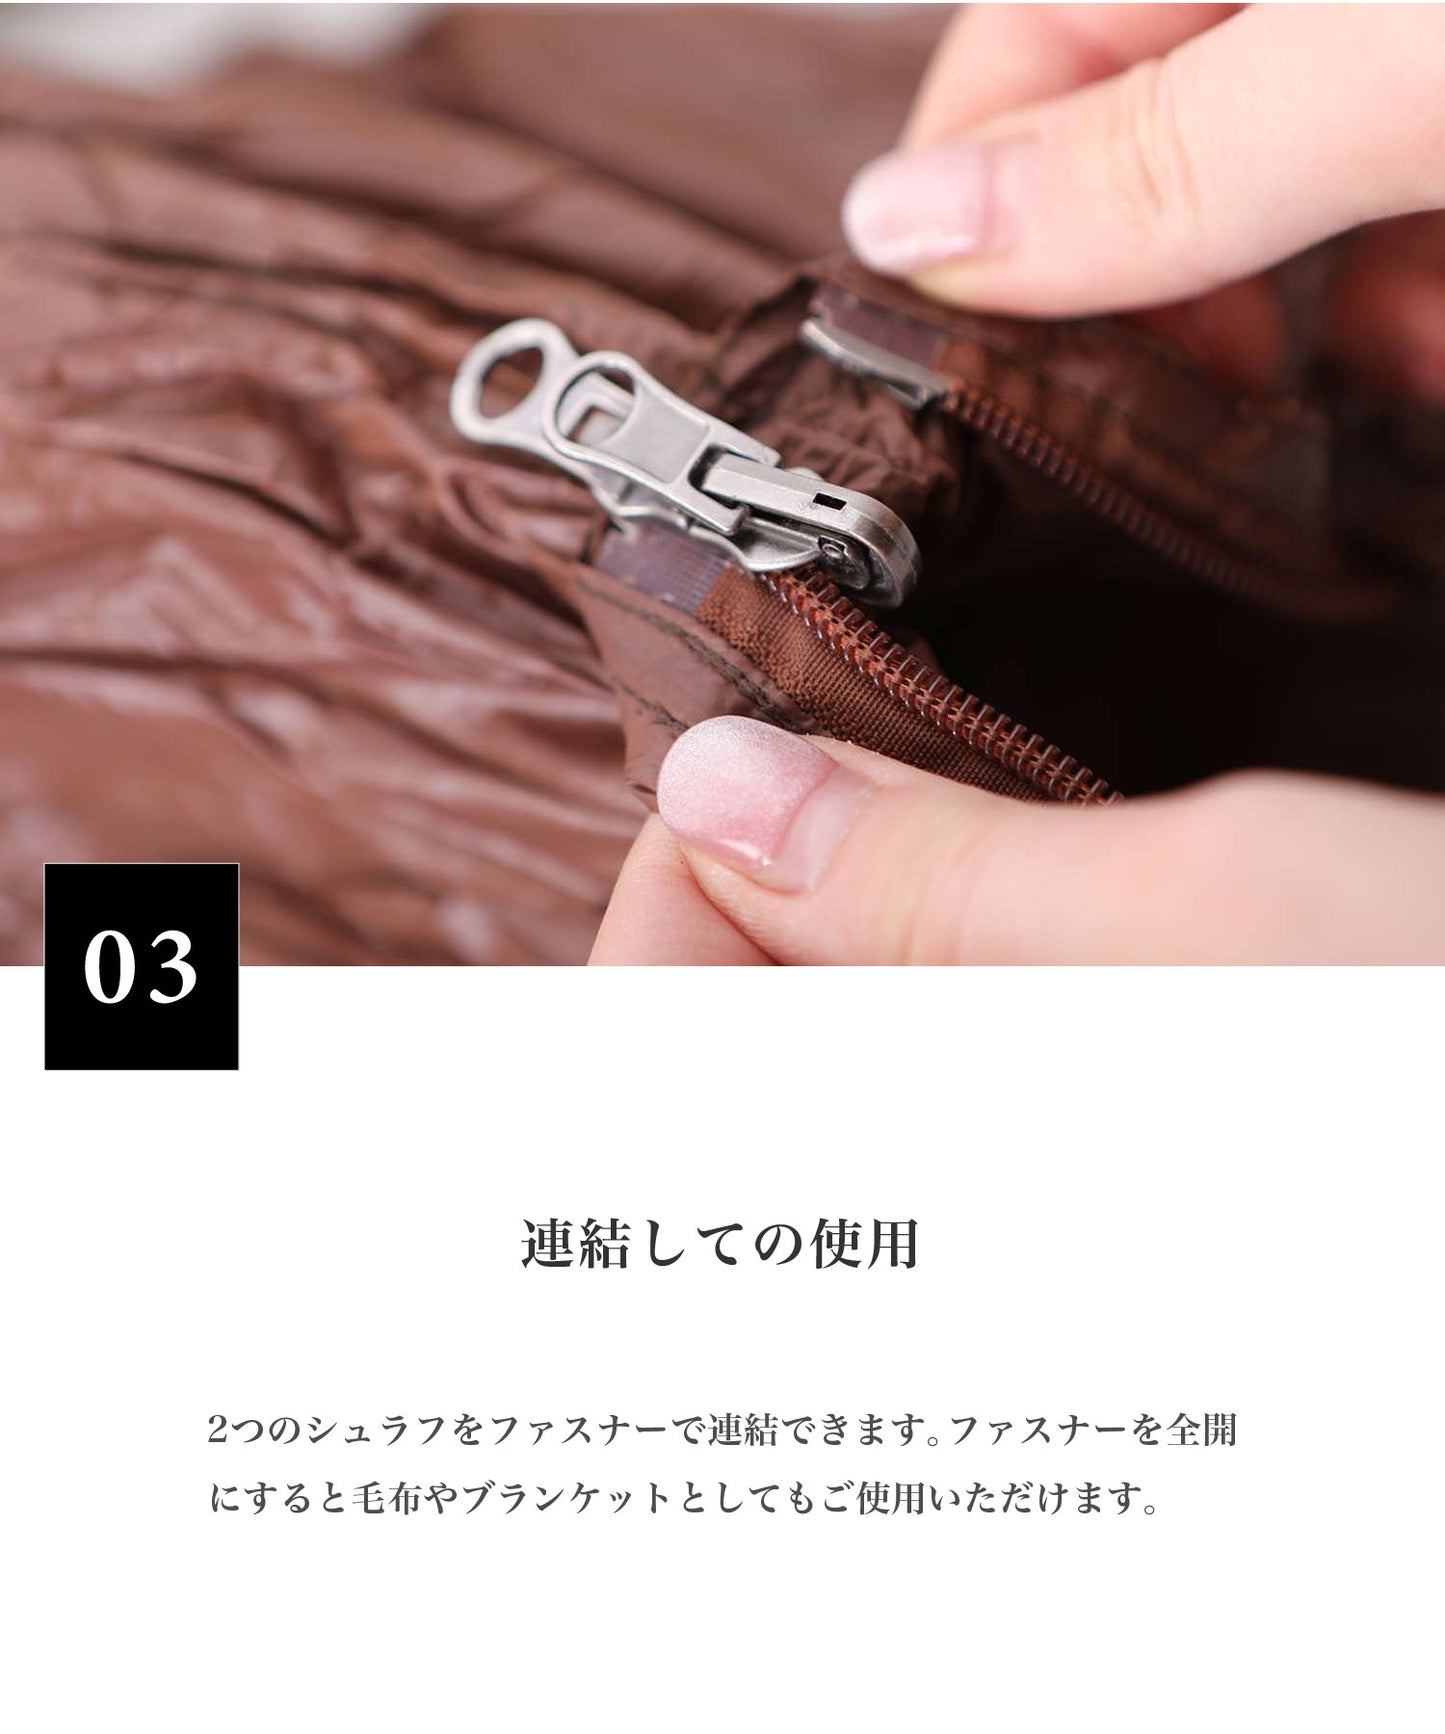 【S'more / OKURUMI BAG 】 おくるみバッグ 寝袋